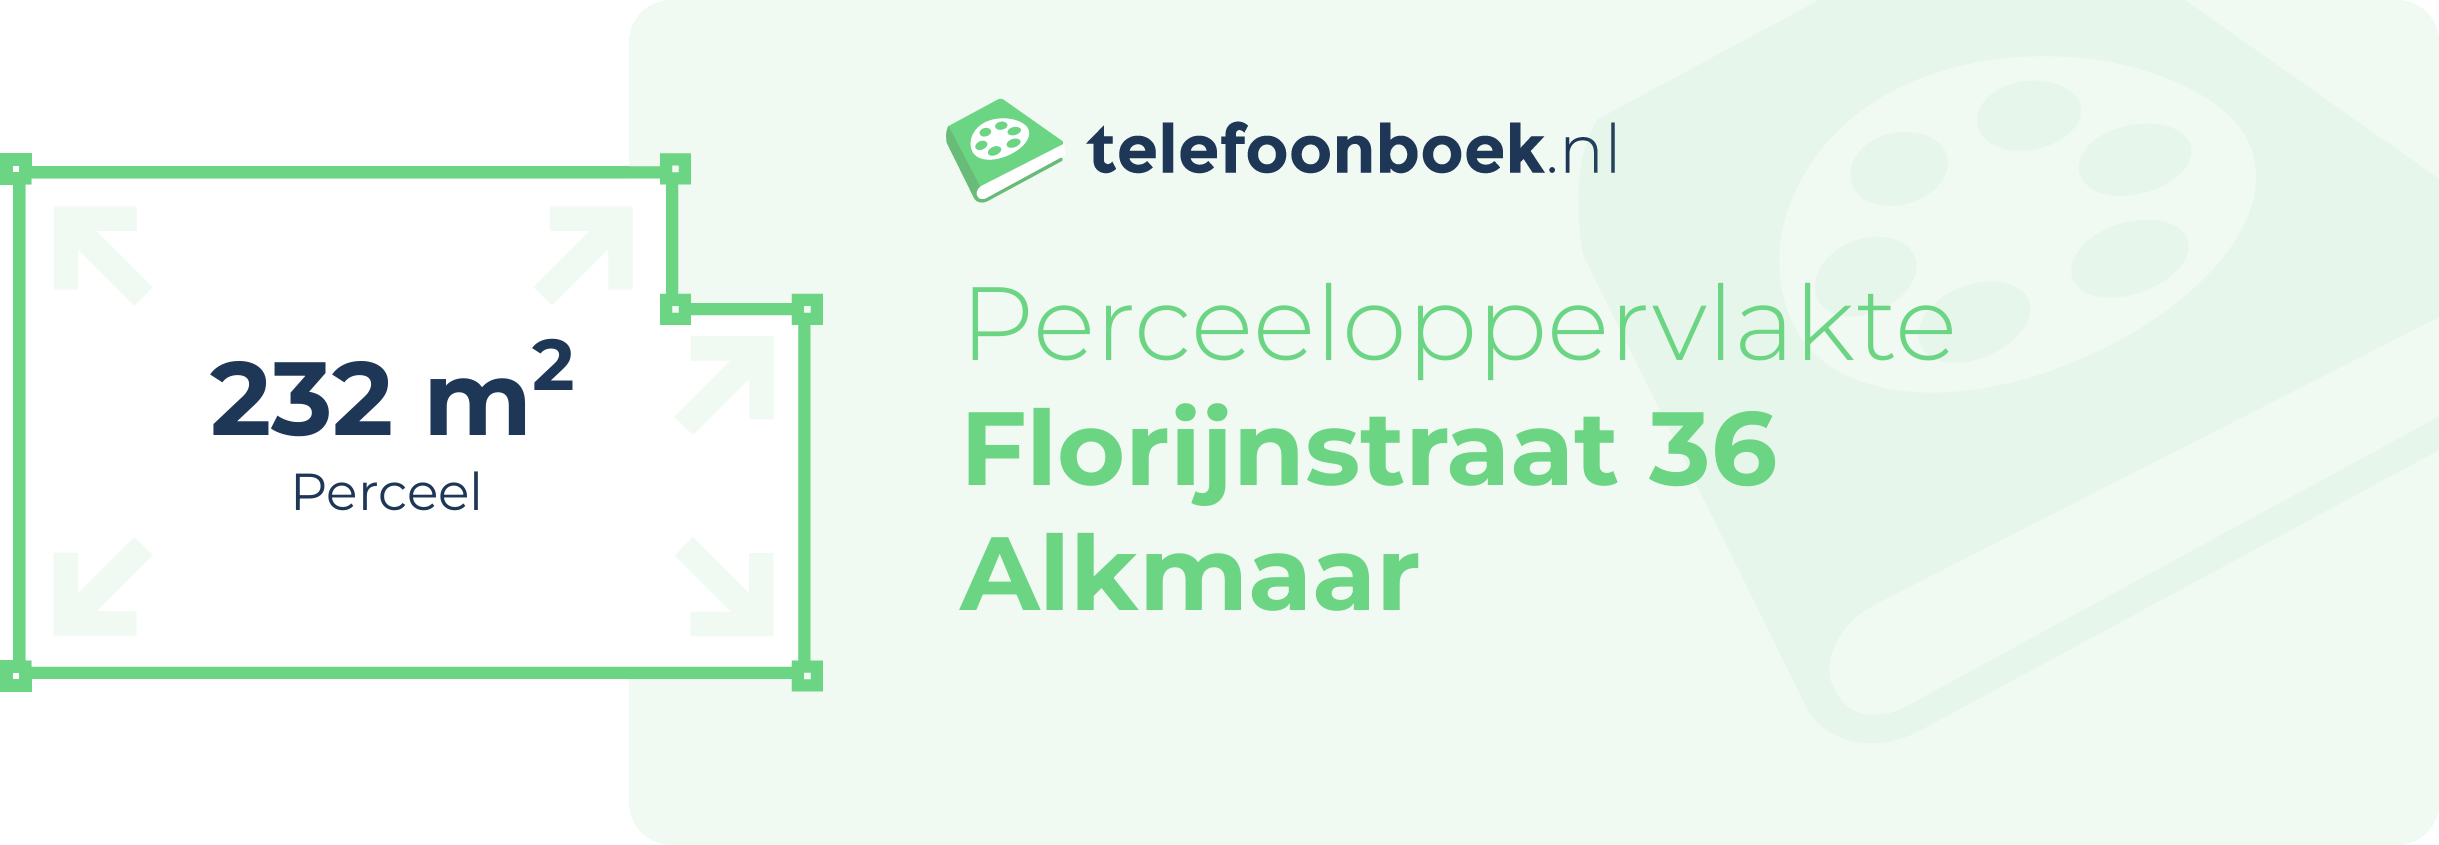 Perceeloppervlakte Florijnstraat 36 Alkmaar